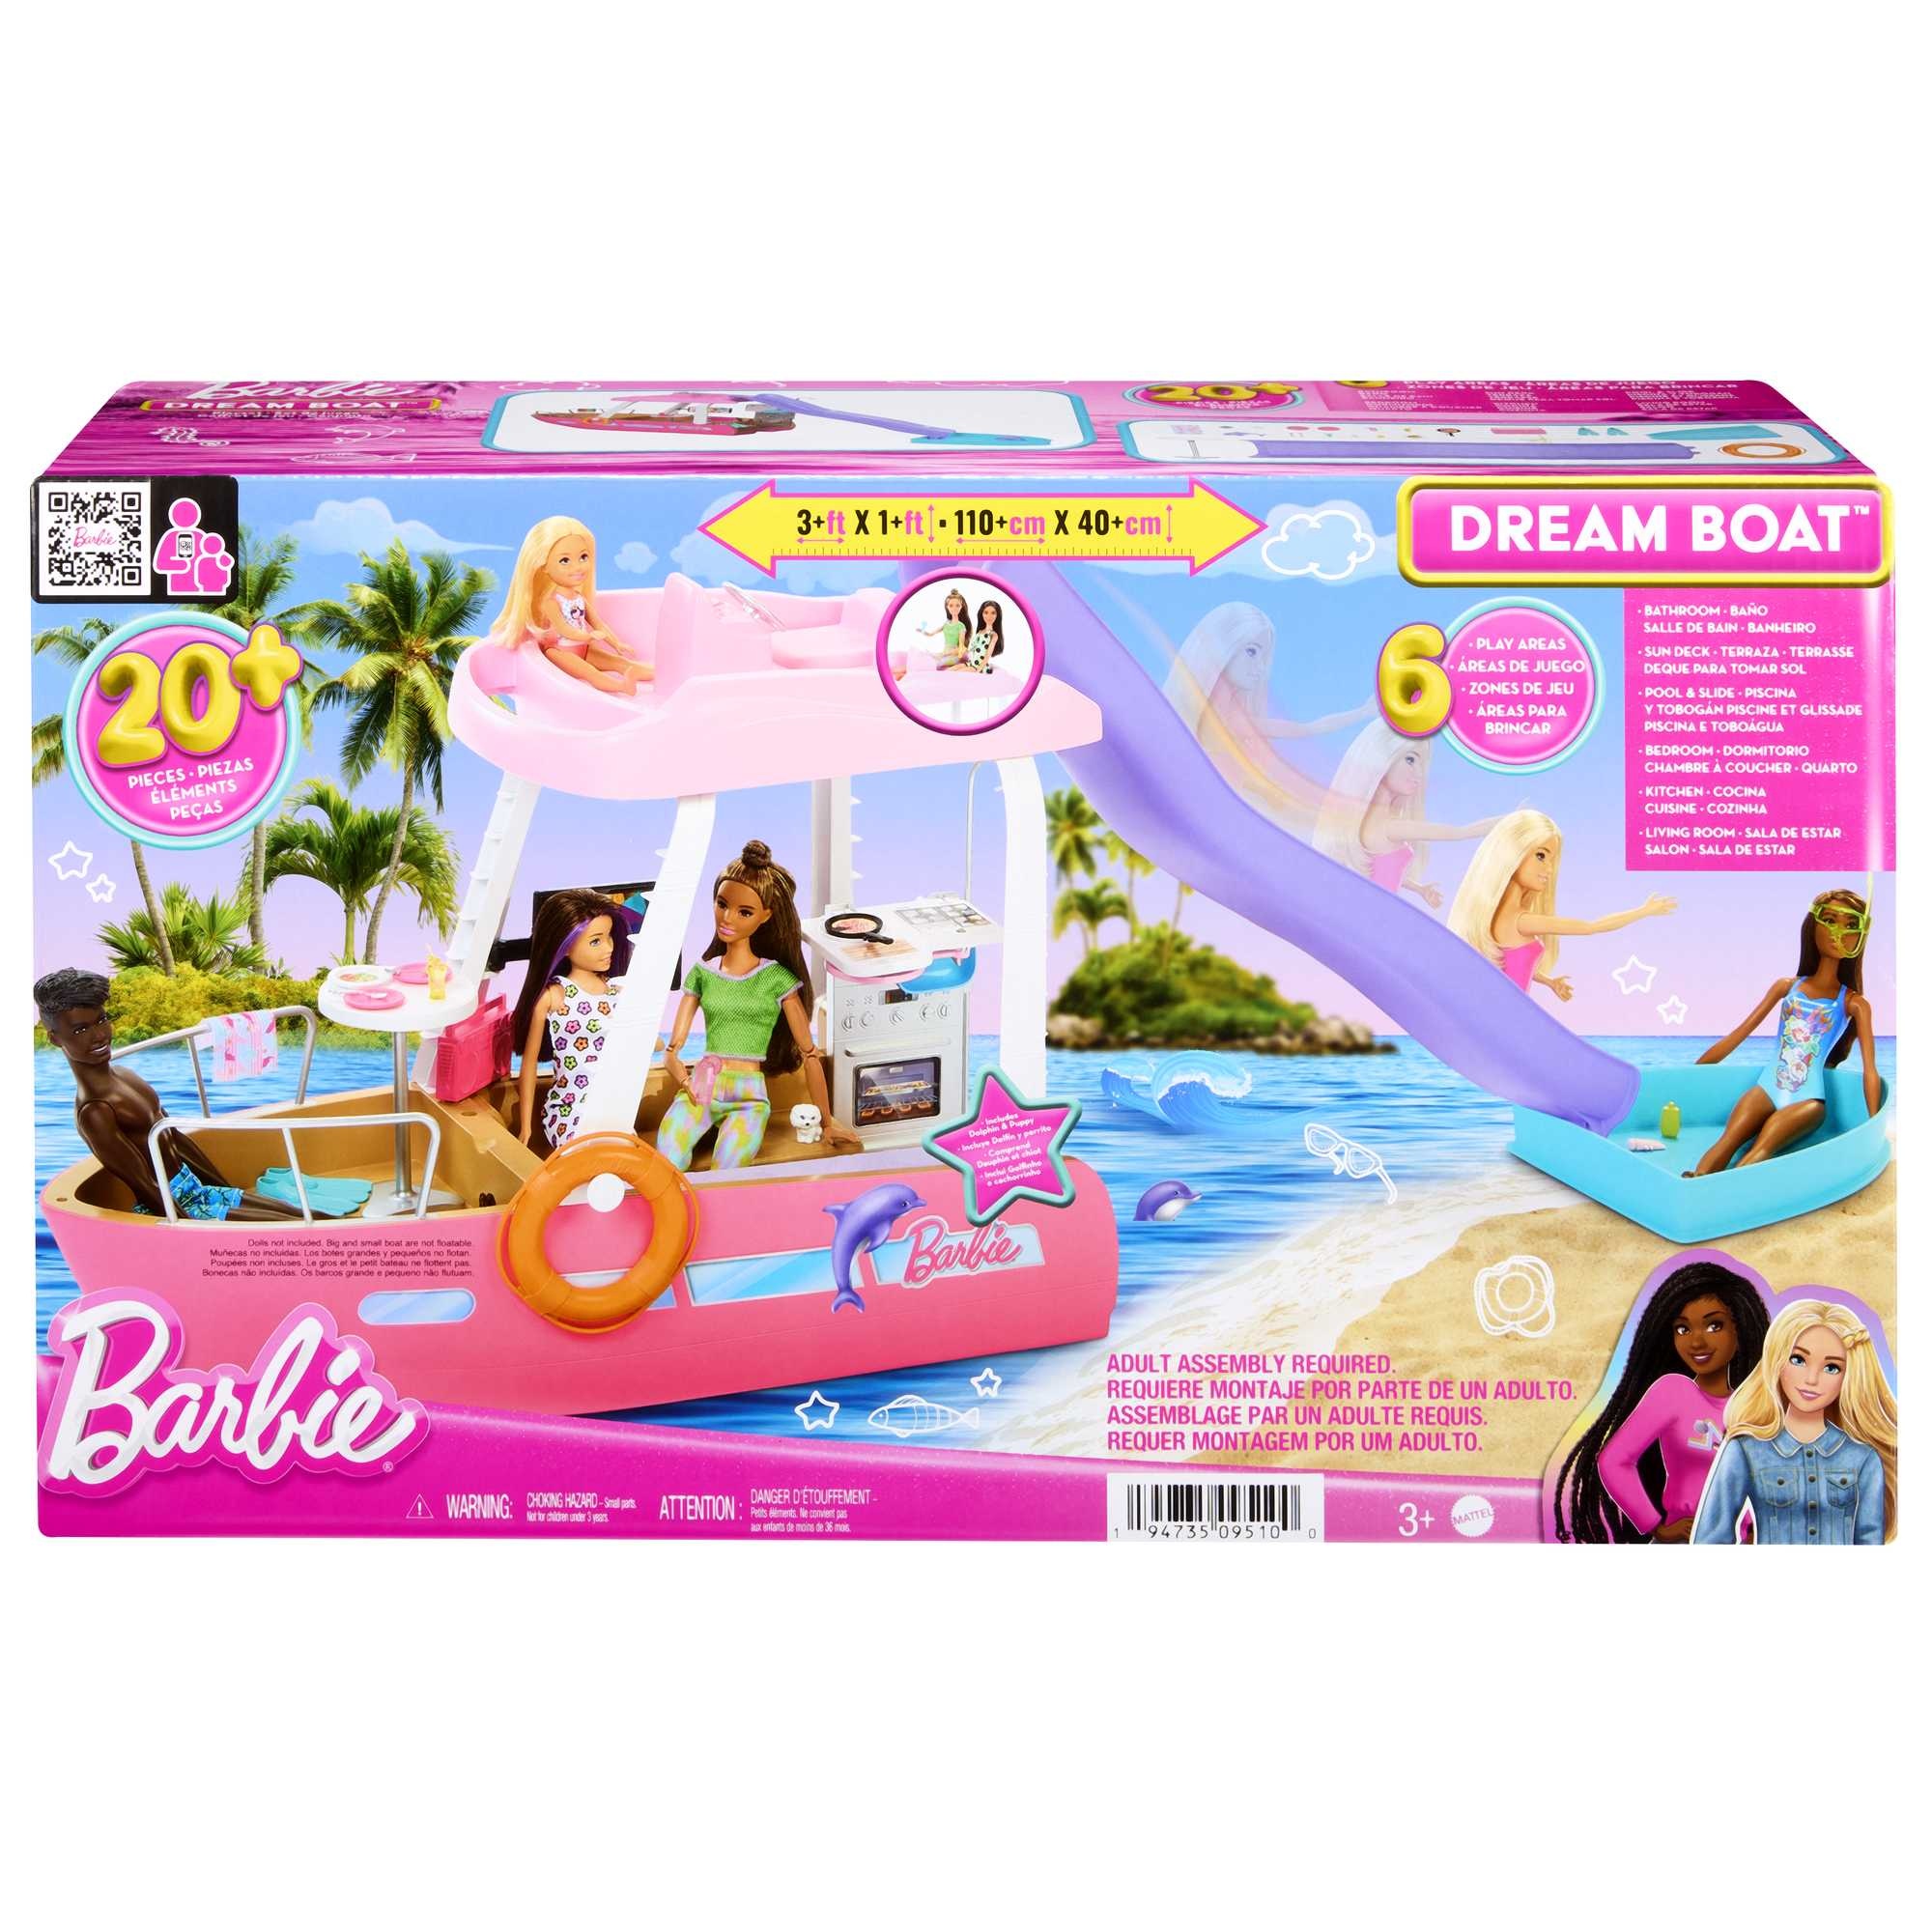 Maison de Rêve Barbie avec nombreux accessoires inclus - Poupée - Achat &  prix